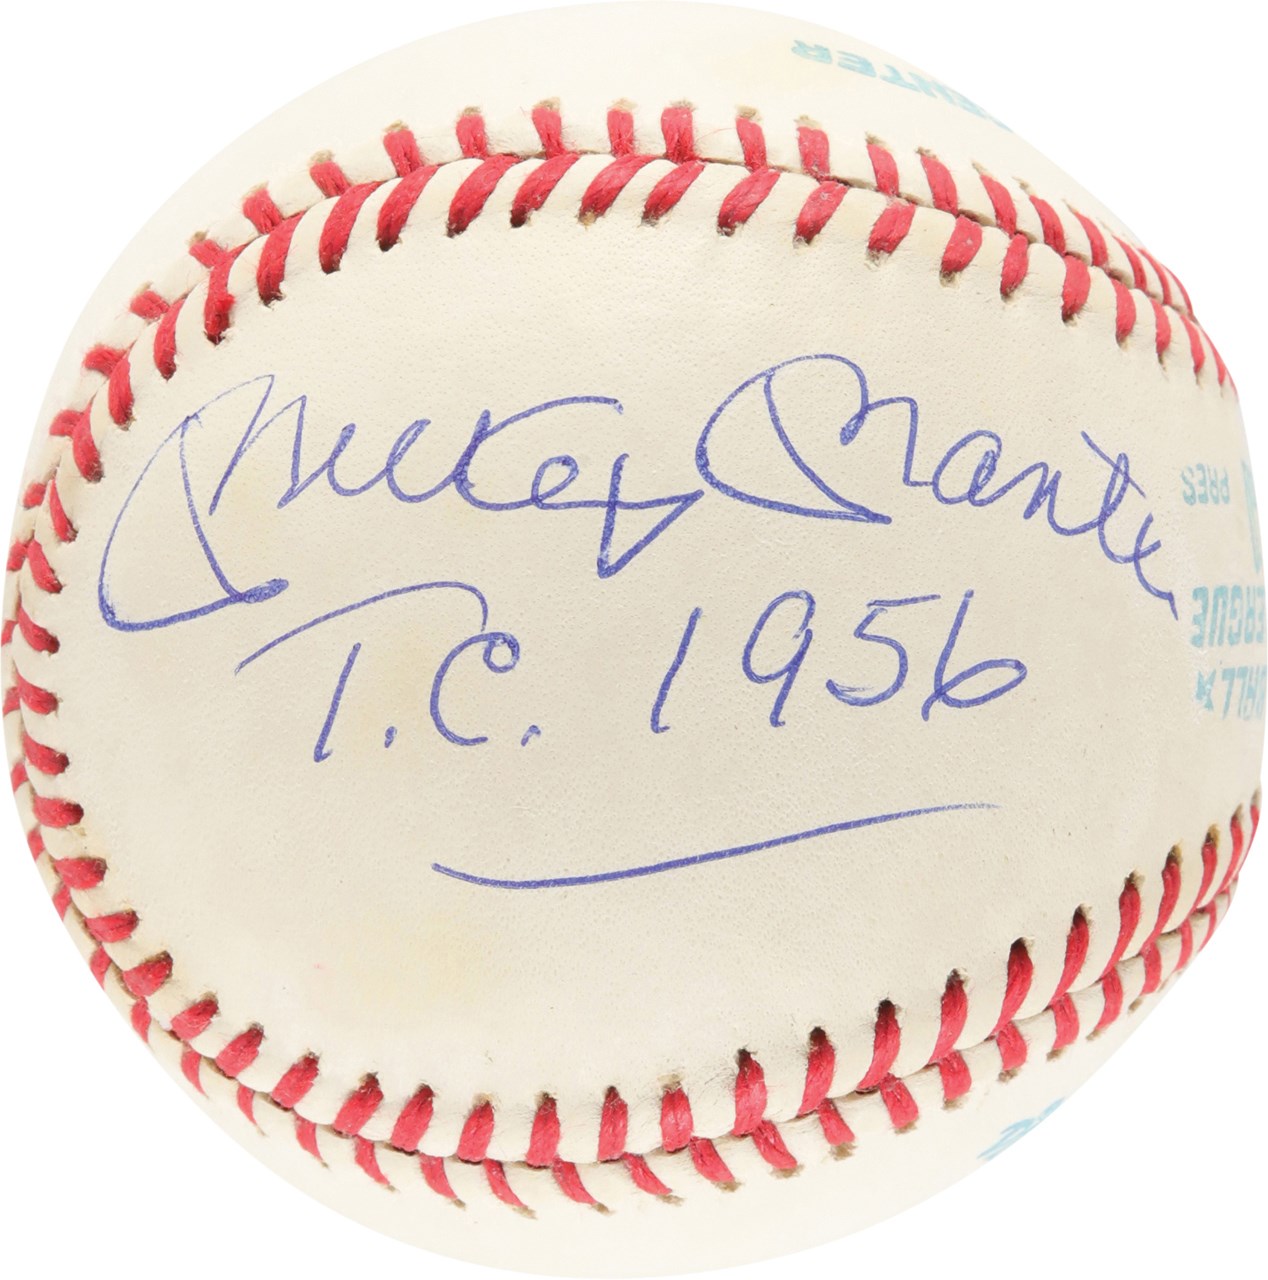 Mickey Mantle Triple Crown "T.C. 1956" Single Signed Baseball (JSA)